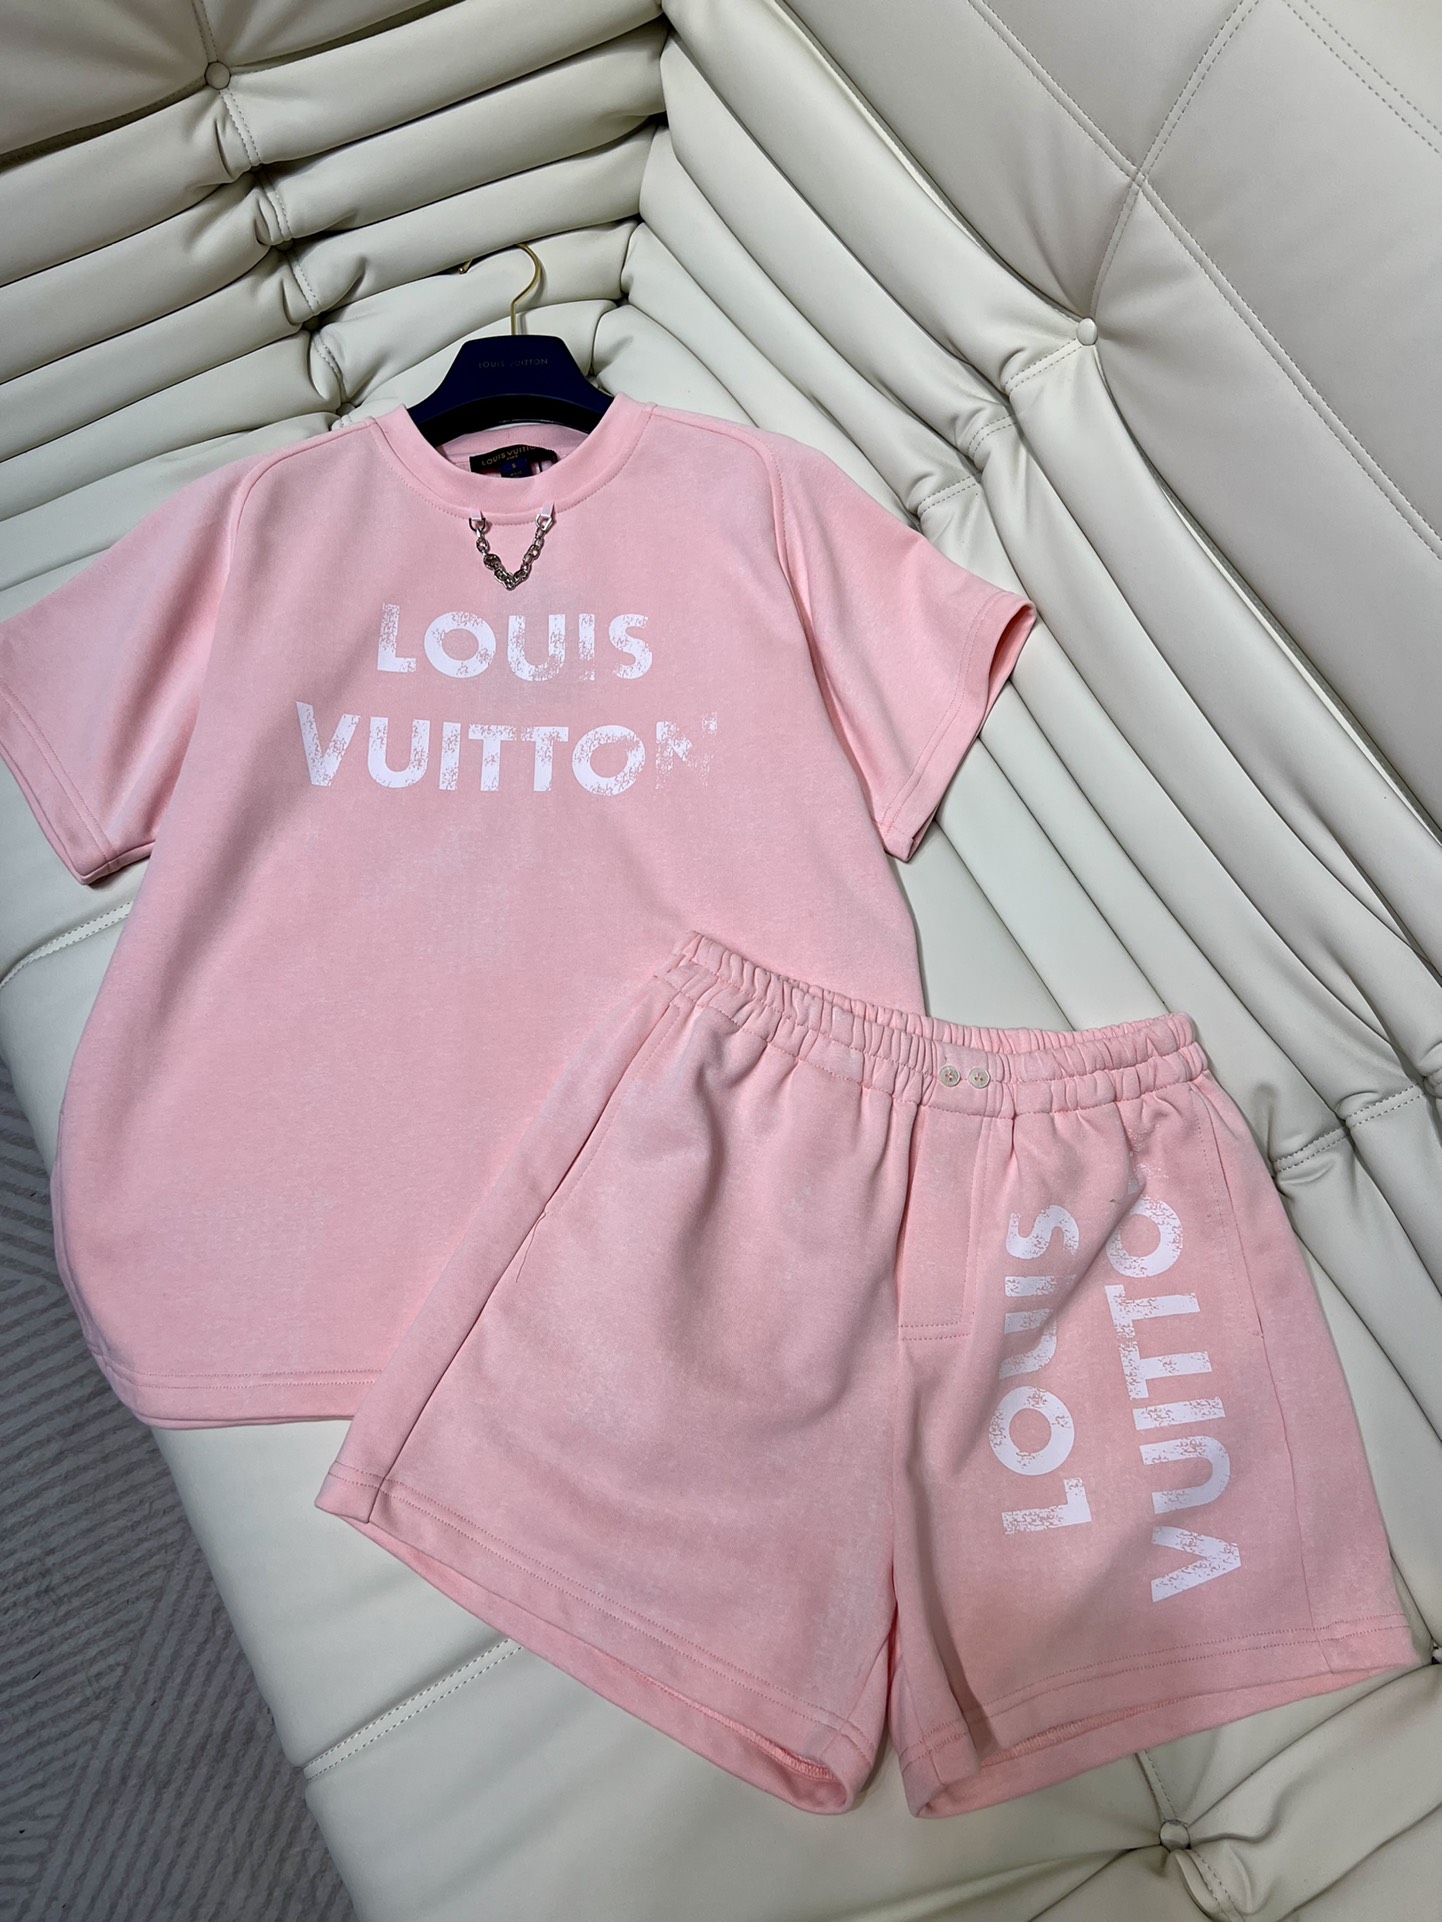 Louis Vuitton AAAAA+
 Kleding Overhemden Korte Broek T-Shirt Trainingspak Geel Katoen LV Circle Korte mouw